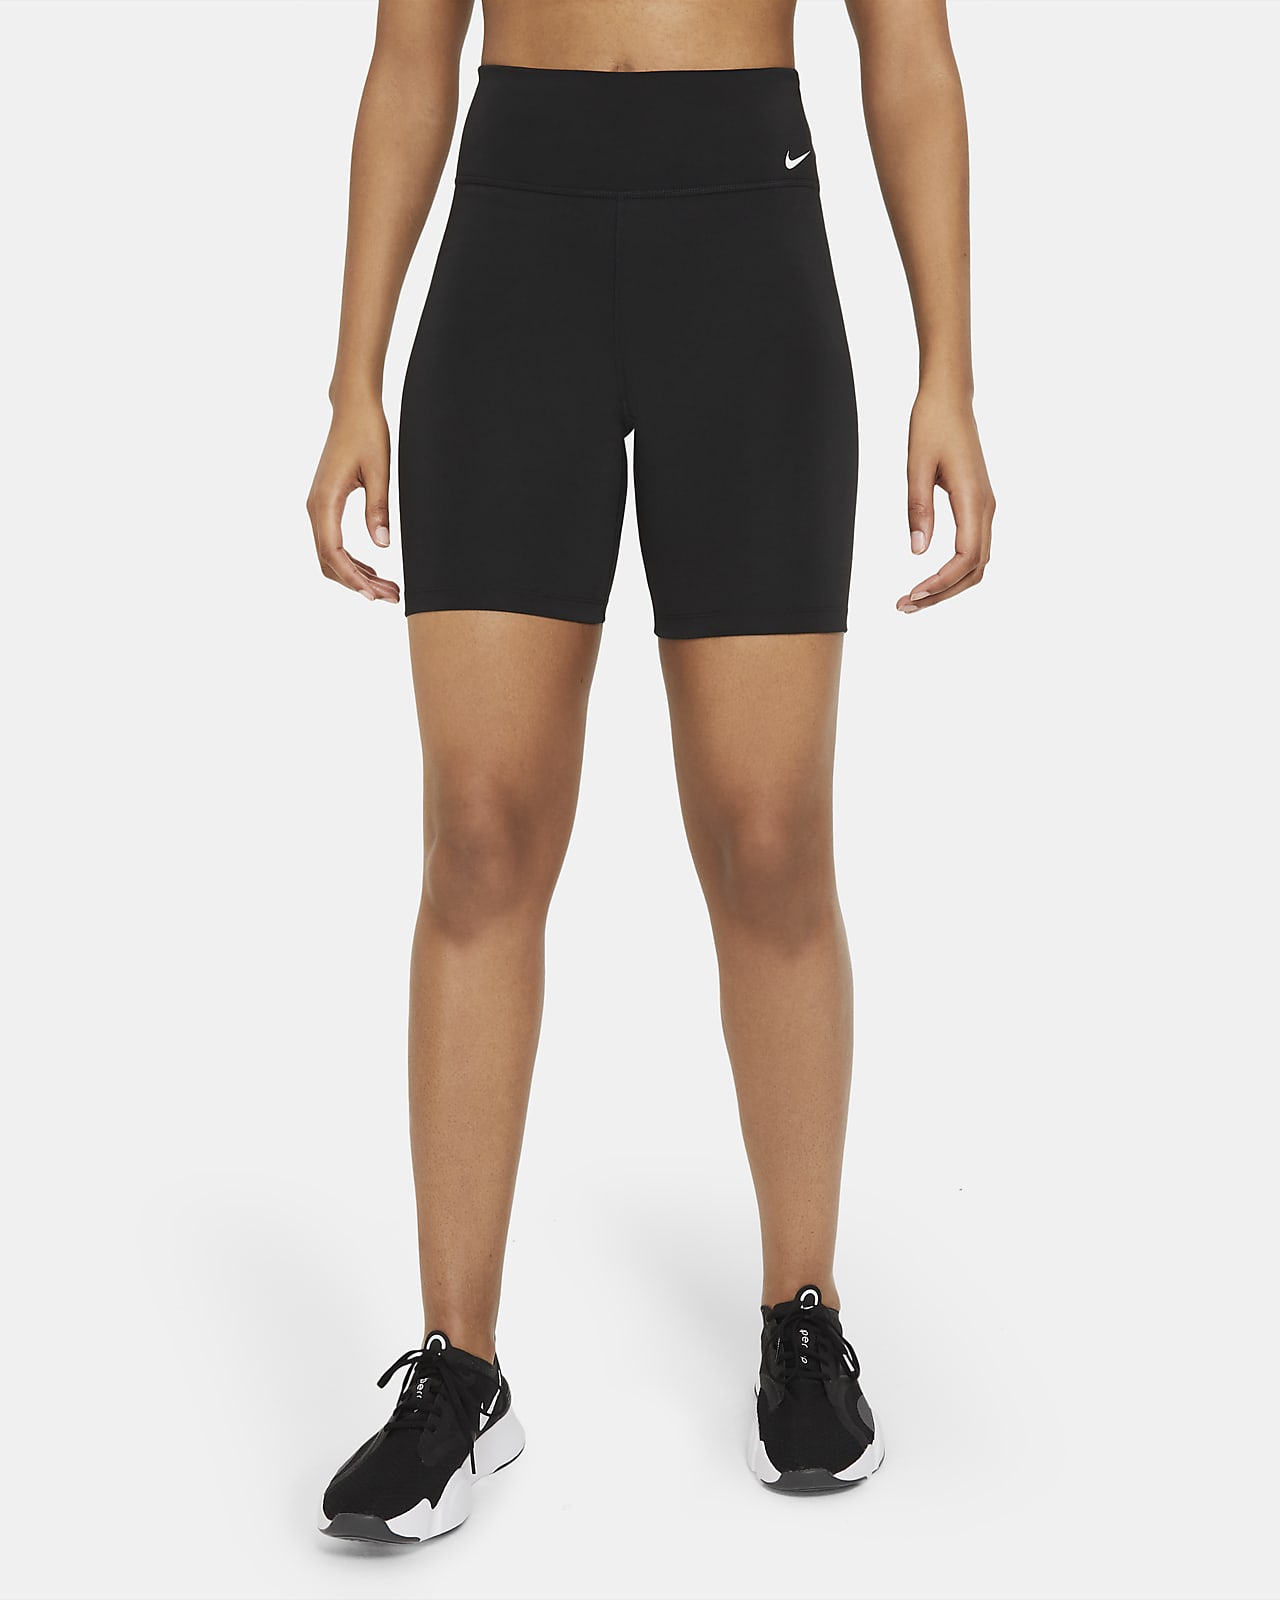 Calções tipo ciclista de 18 cm de cintura normal Nike One para mulher